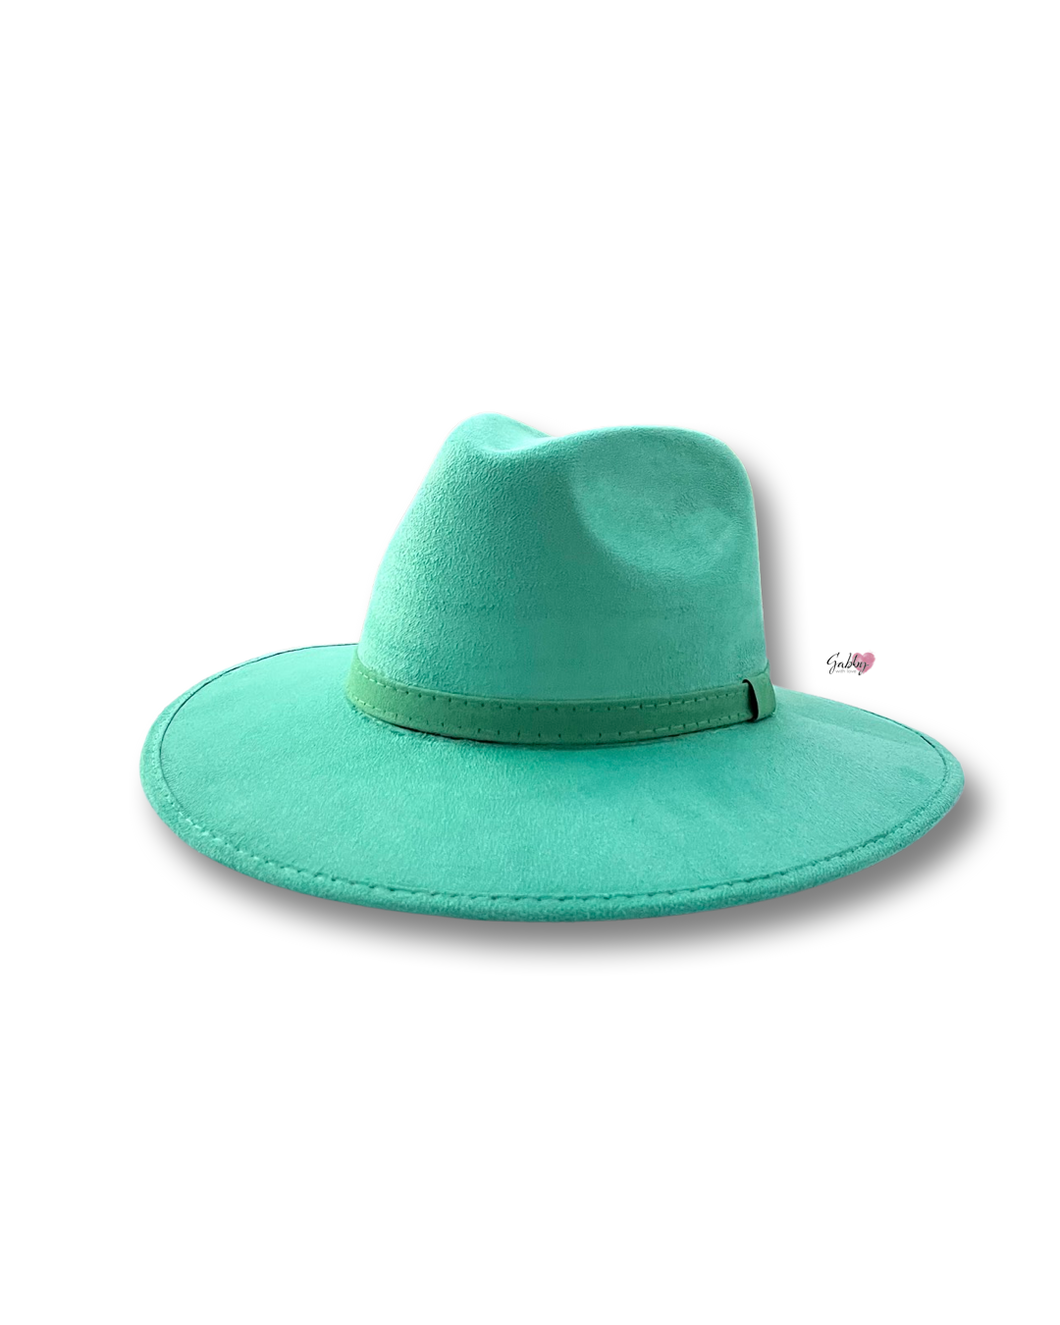 Emerald Green (Rancher) Sombrero